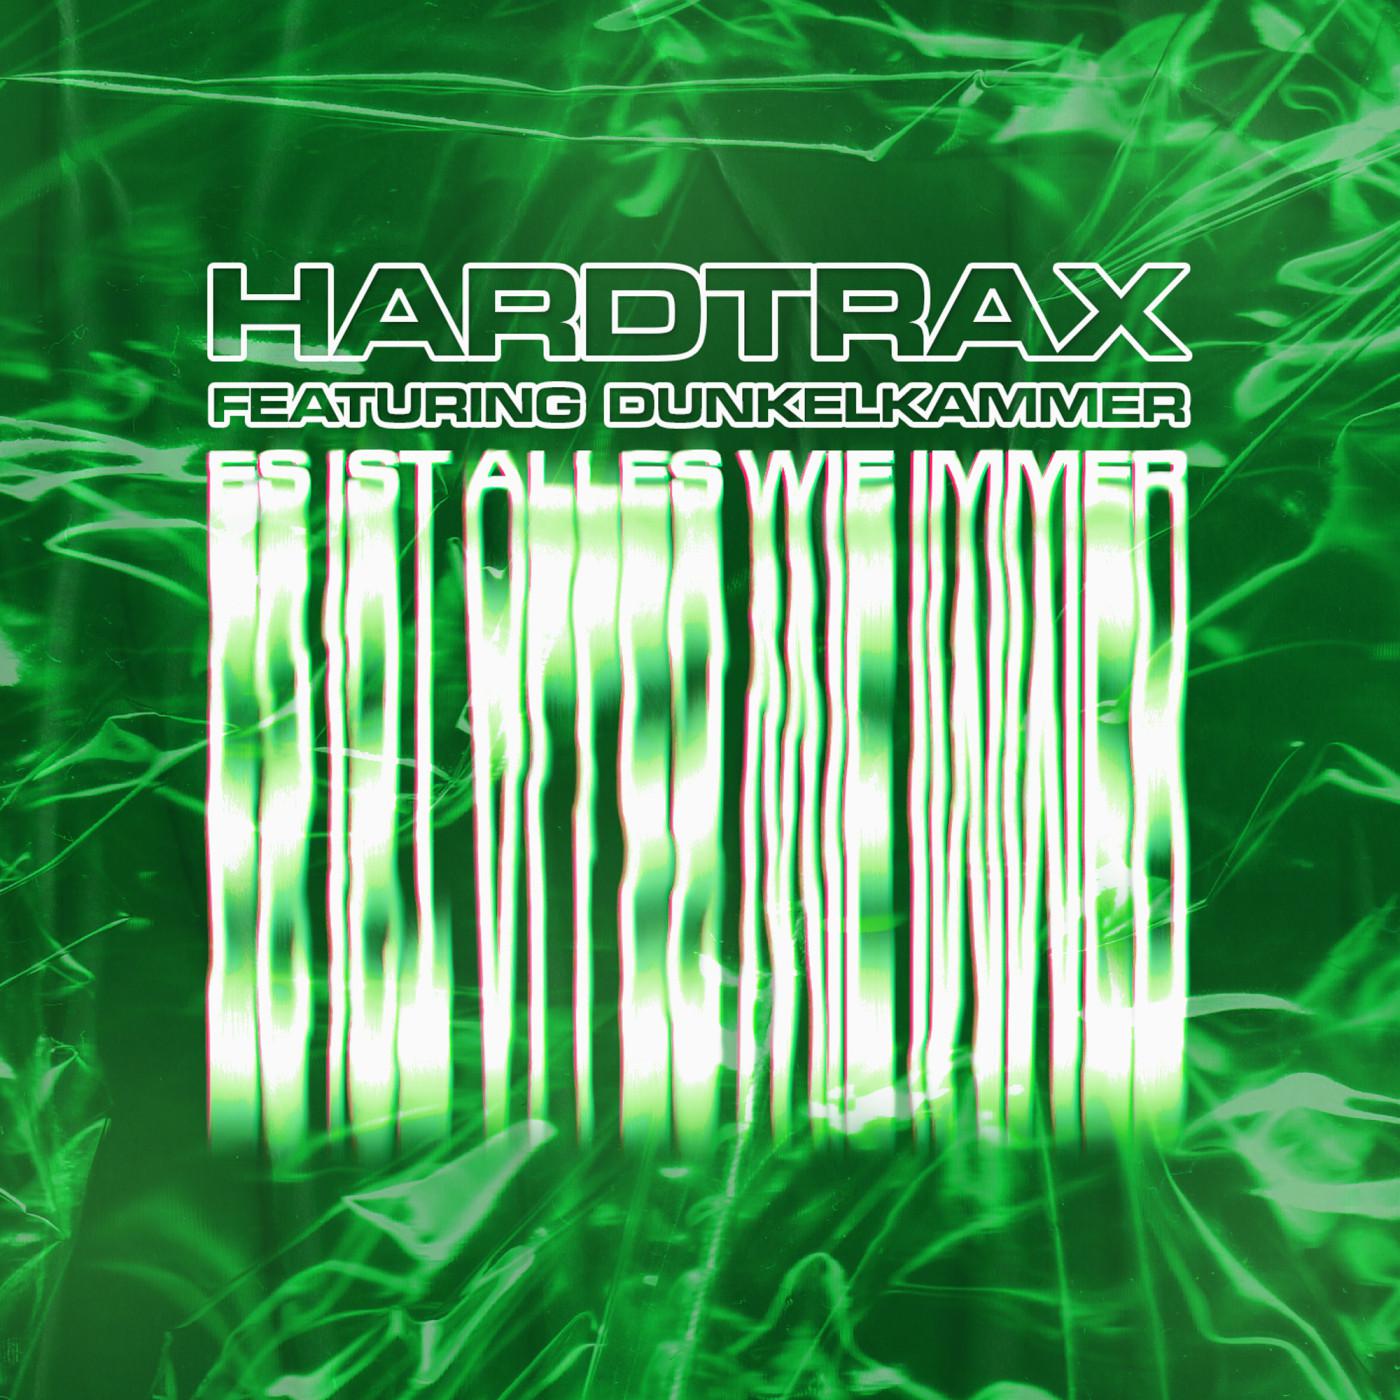 hardtrax - Wir Wollen Mehr (feat. Dunkelkammer) (Original Mix)